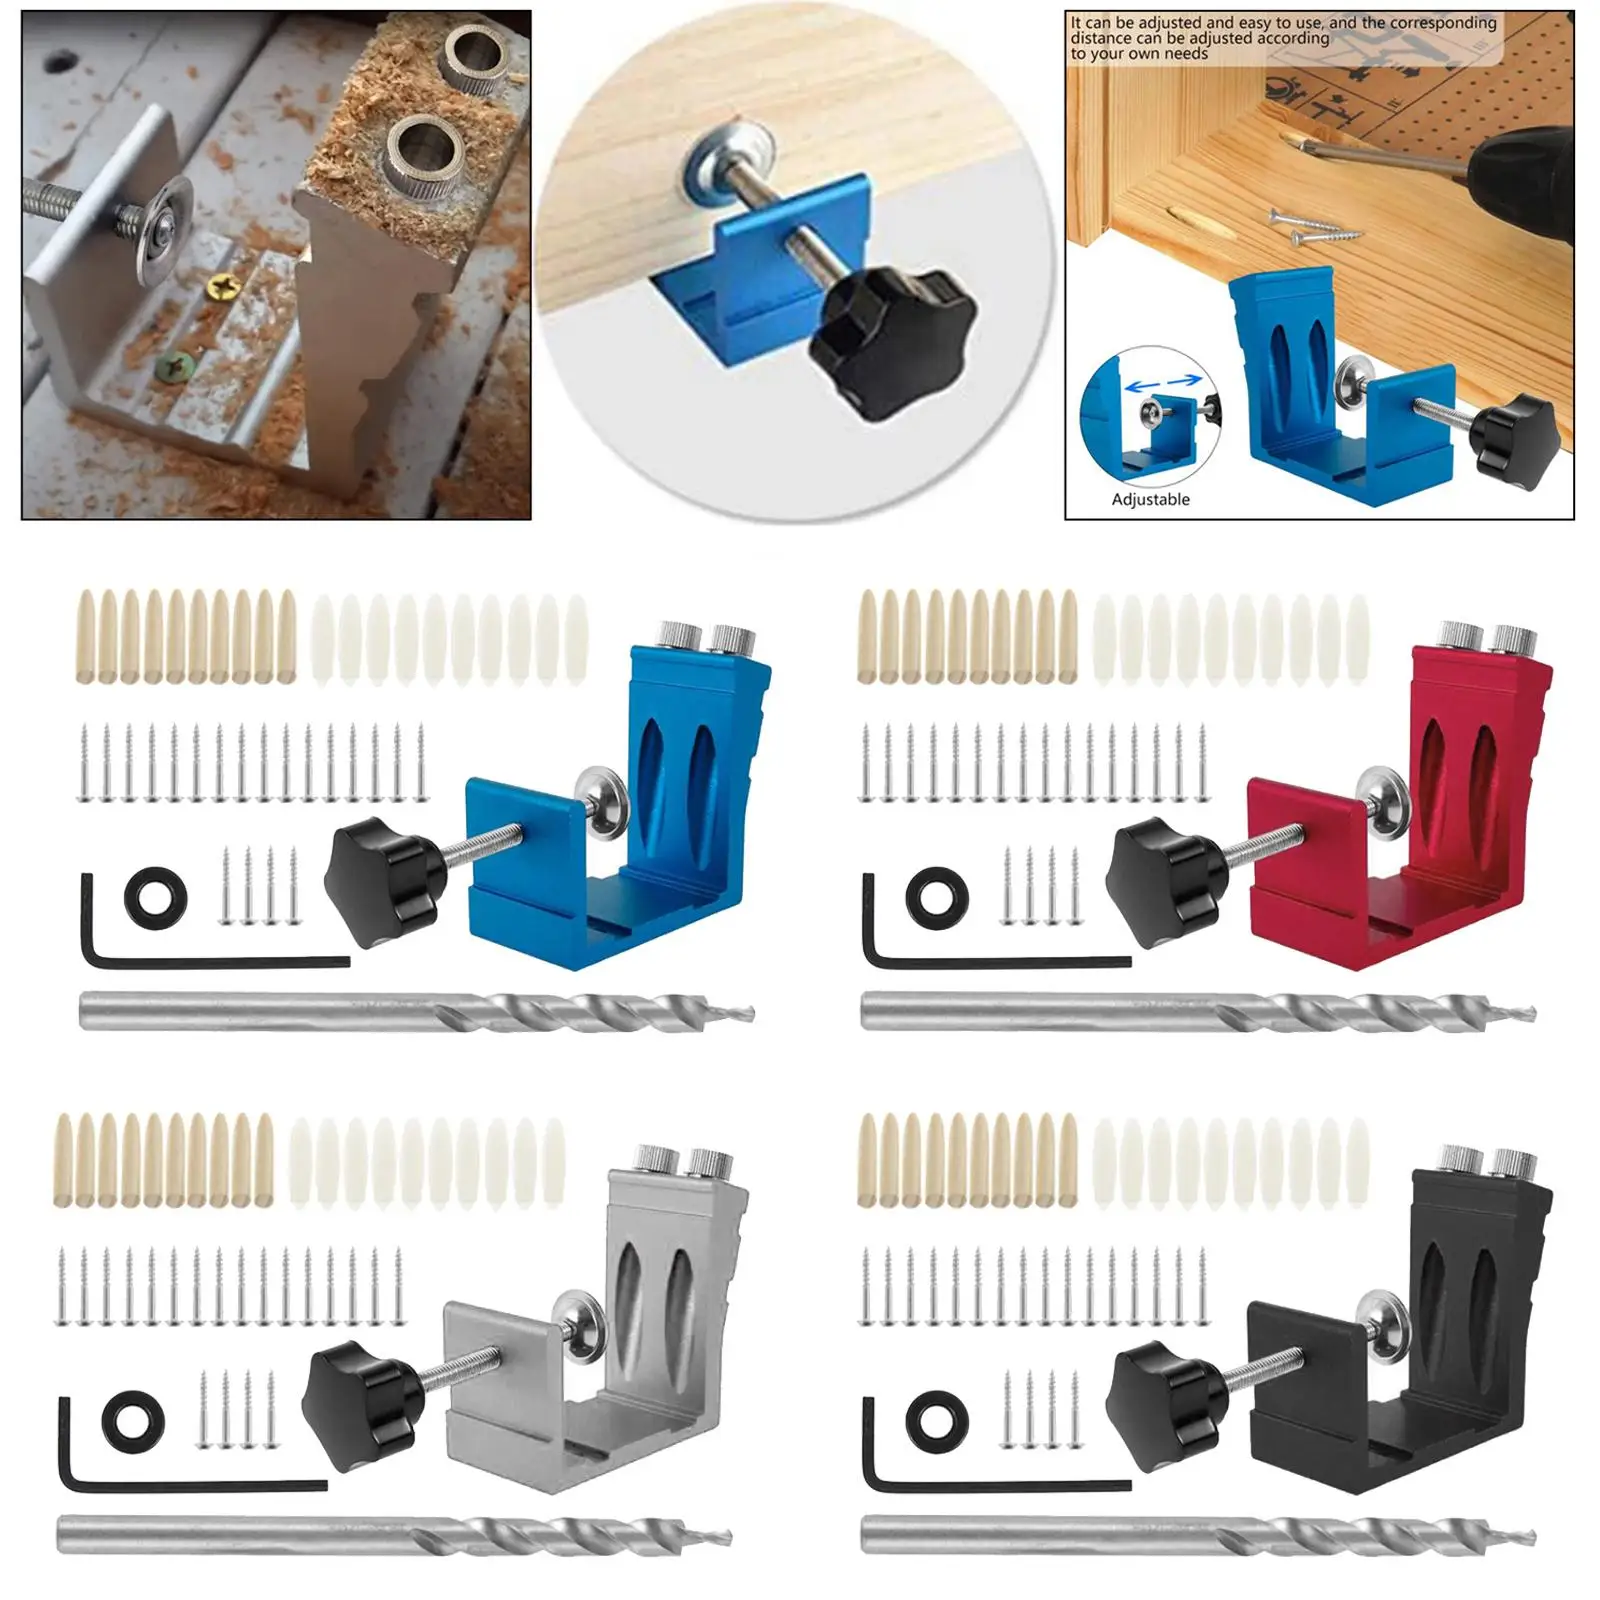 15 Degree Pocket Hole Jig Kit   Drill Tool Woodworking Locator